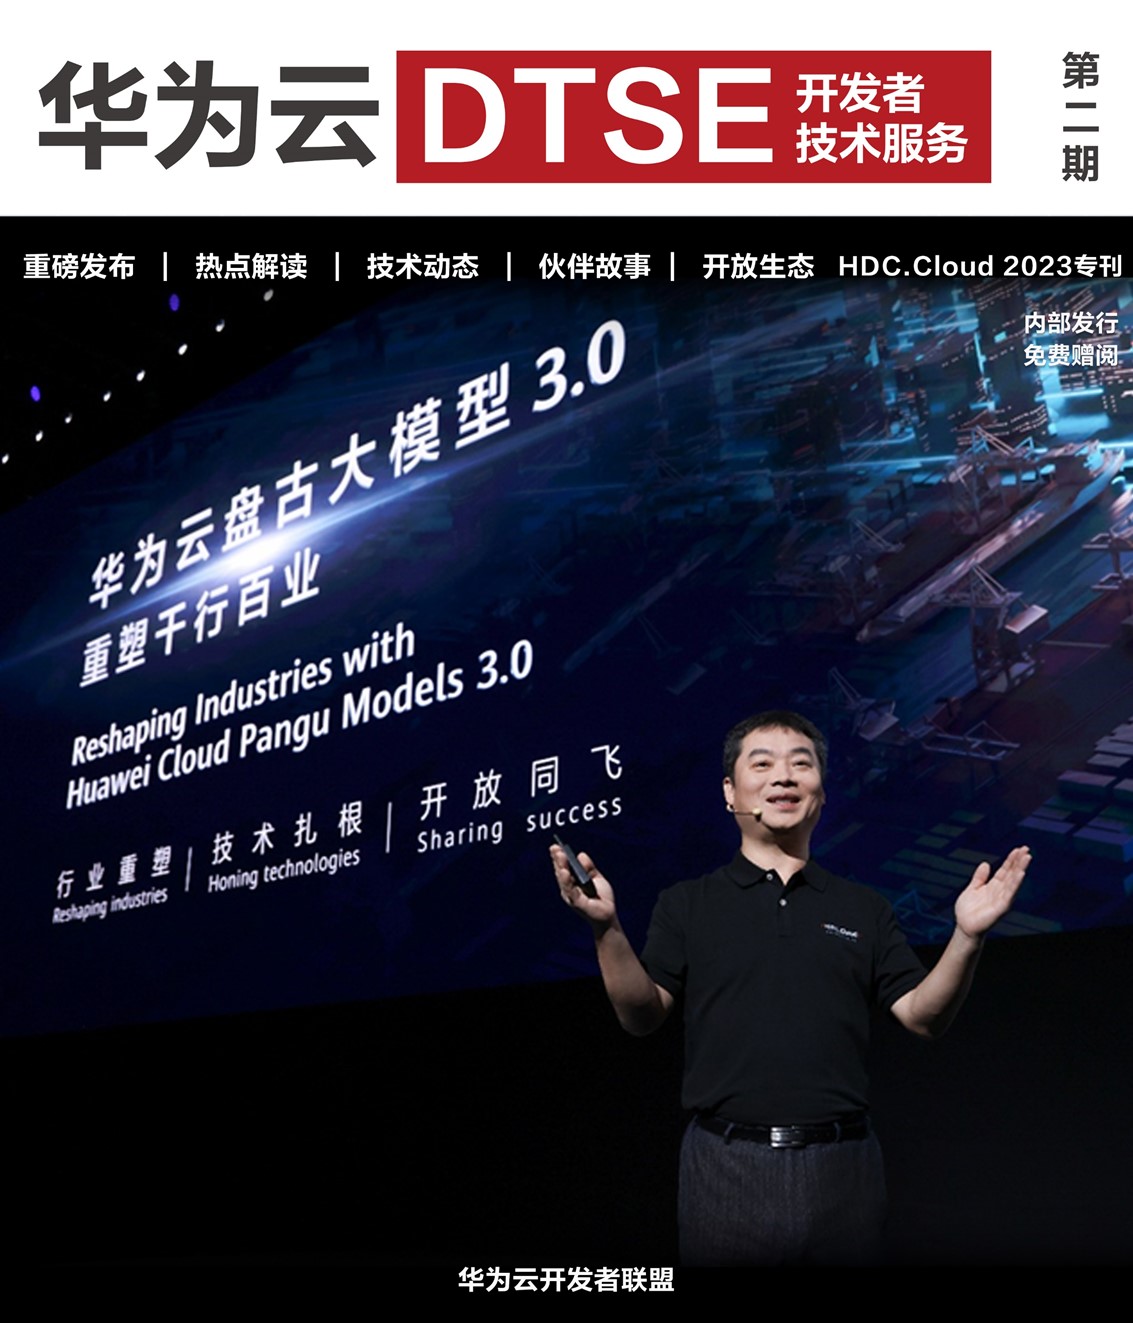 《华为云DTSE》期刊2023年第二季—HDC.Cloud 2023专刊_人工智能